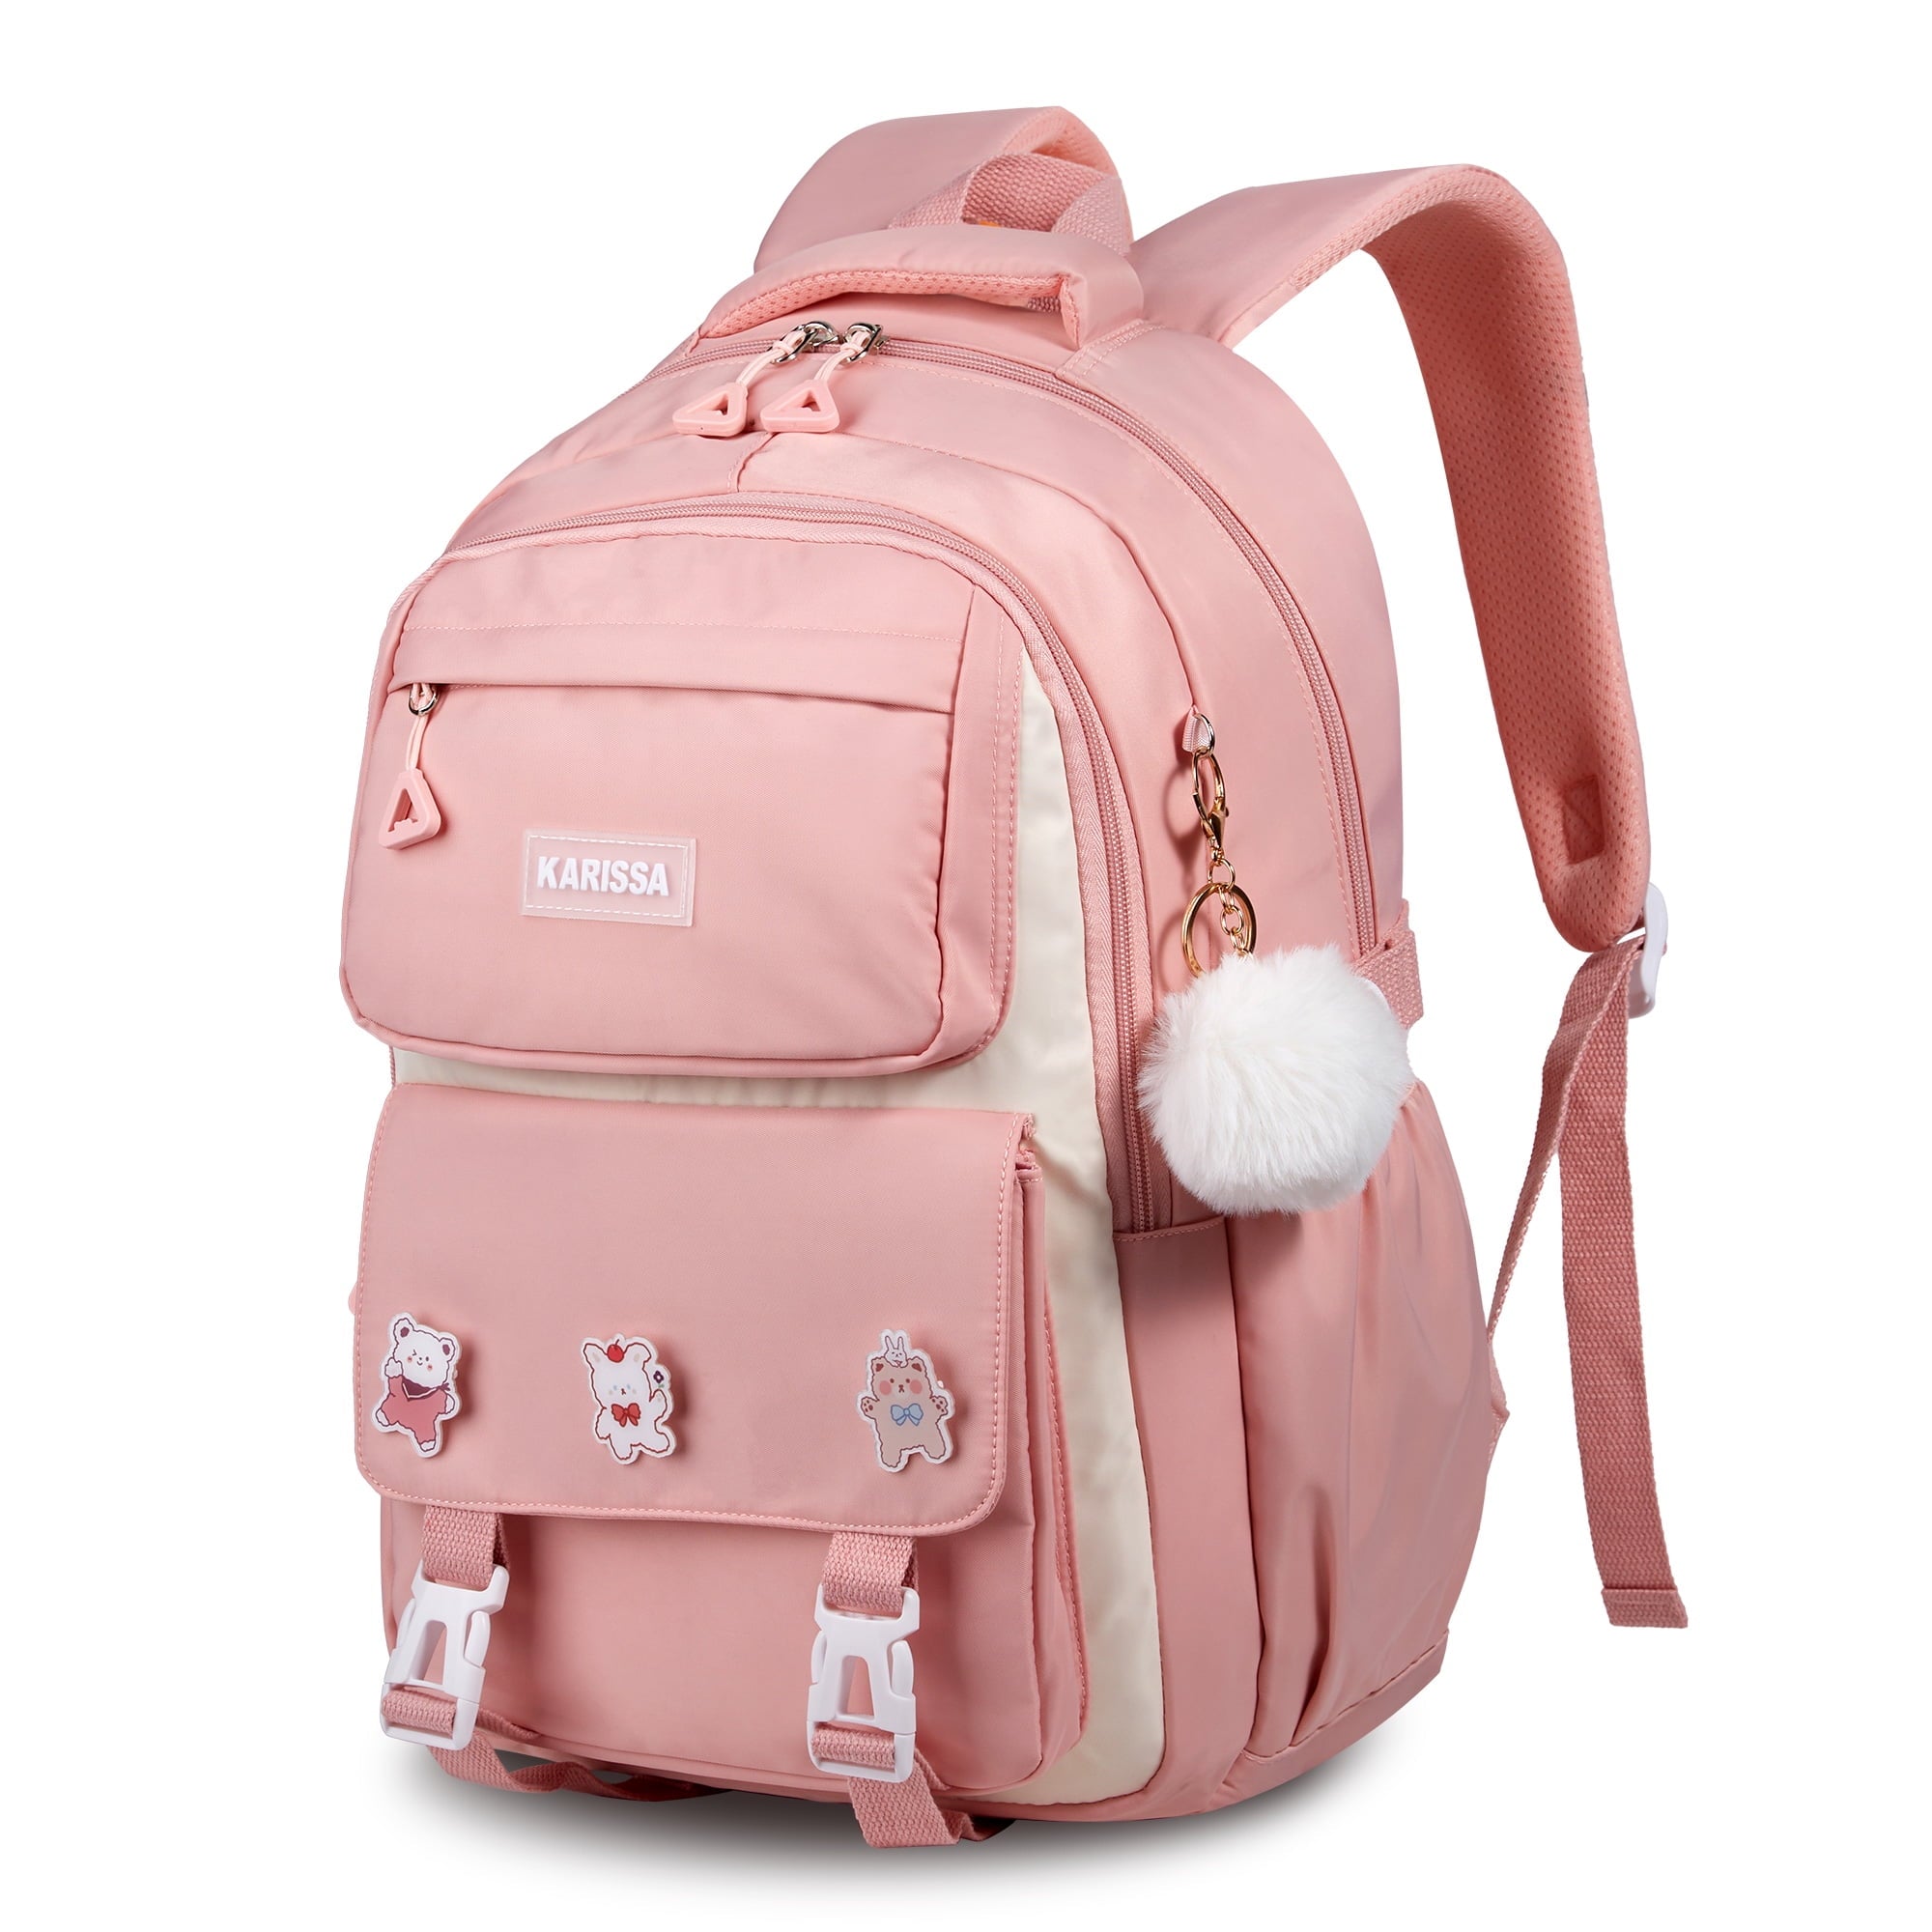 Vbiger School Backpacks for Girls Schoolbag Students Backpack Kids Mochila Backpack for Children Girls in Grades 4-9, Pink